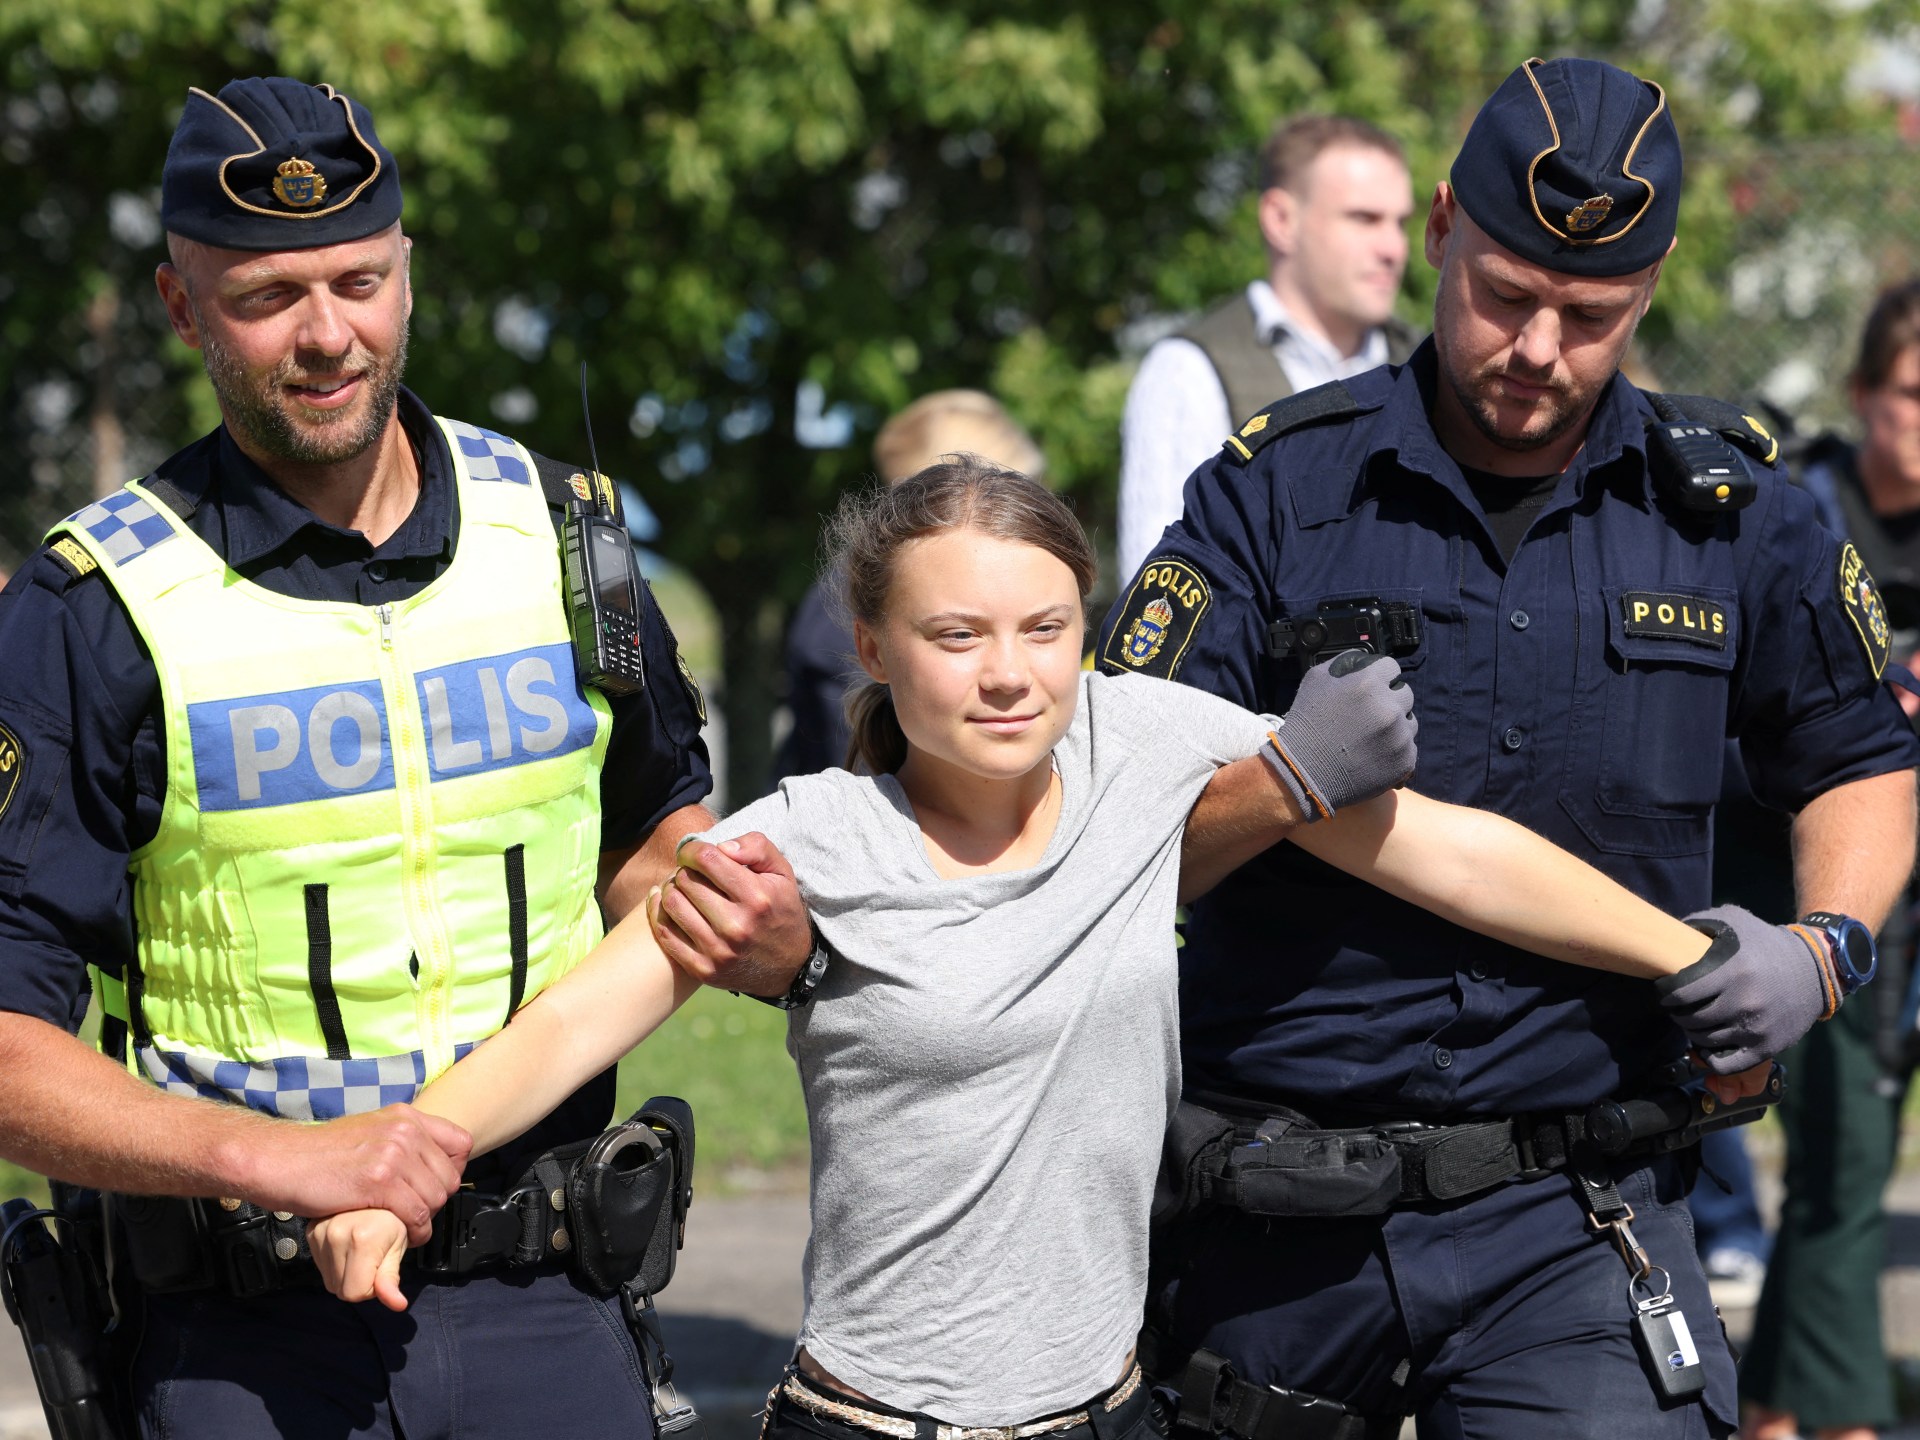 La militante pour le climat Greta Thunberg arrêtée à deux reprises lors d’une manifestation aux Pays-Bas |  Actualités sur la crise climatique